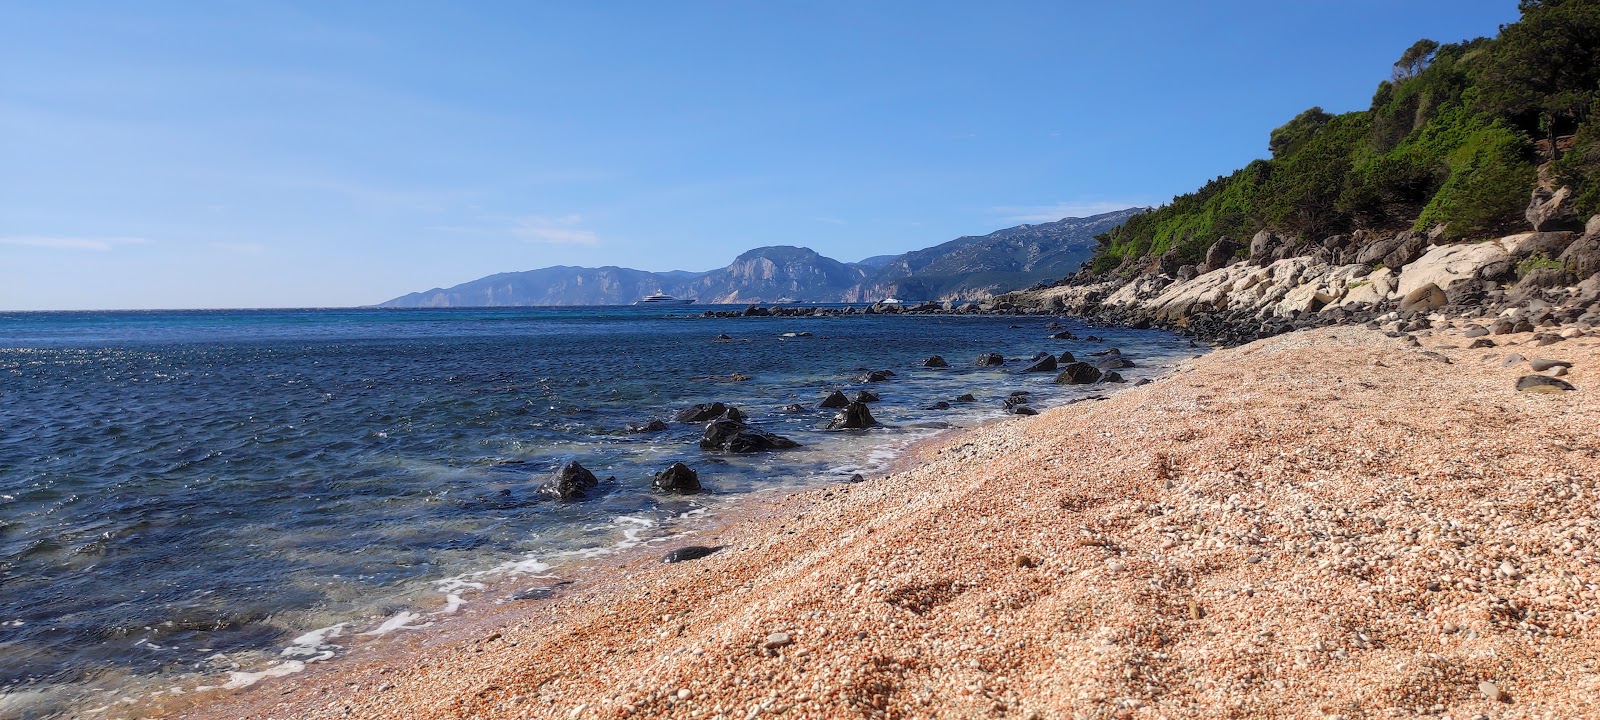 Spiaggia di S'Abba Meica'in fotoğrafı doğrudan plaj ile birlikte